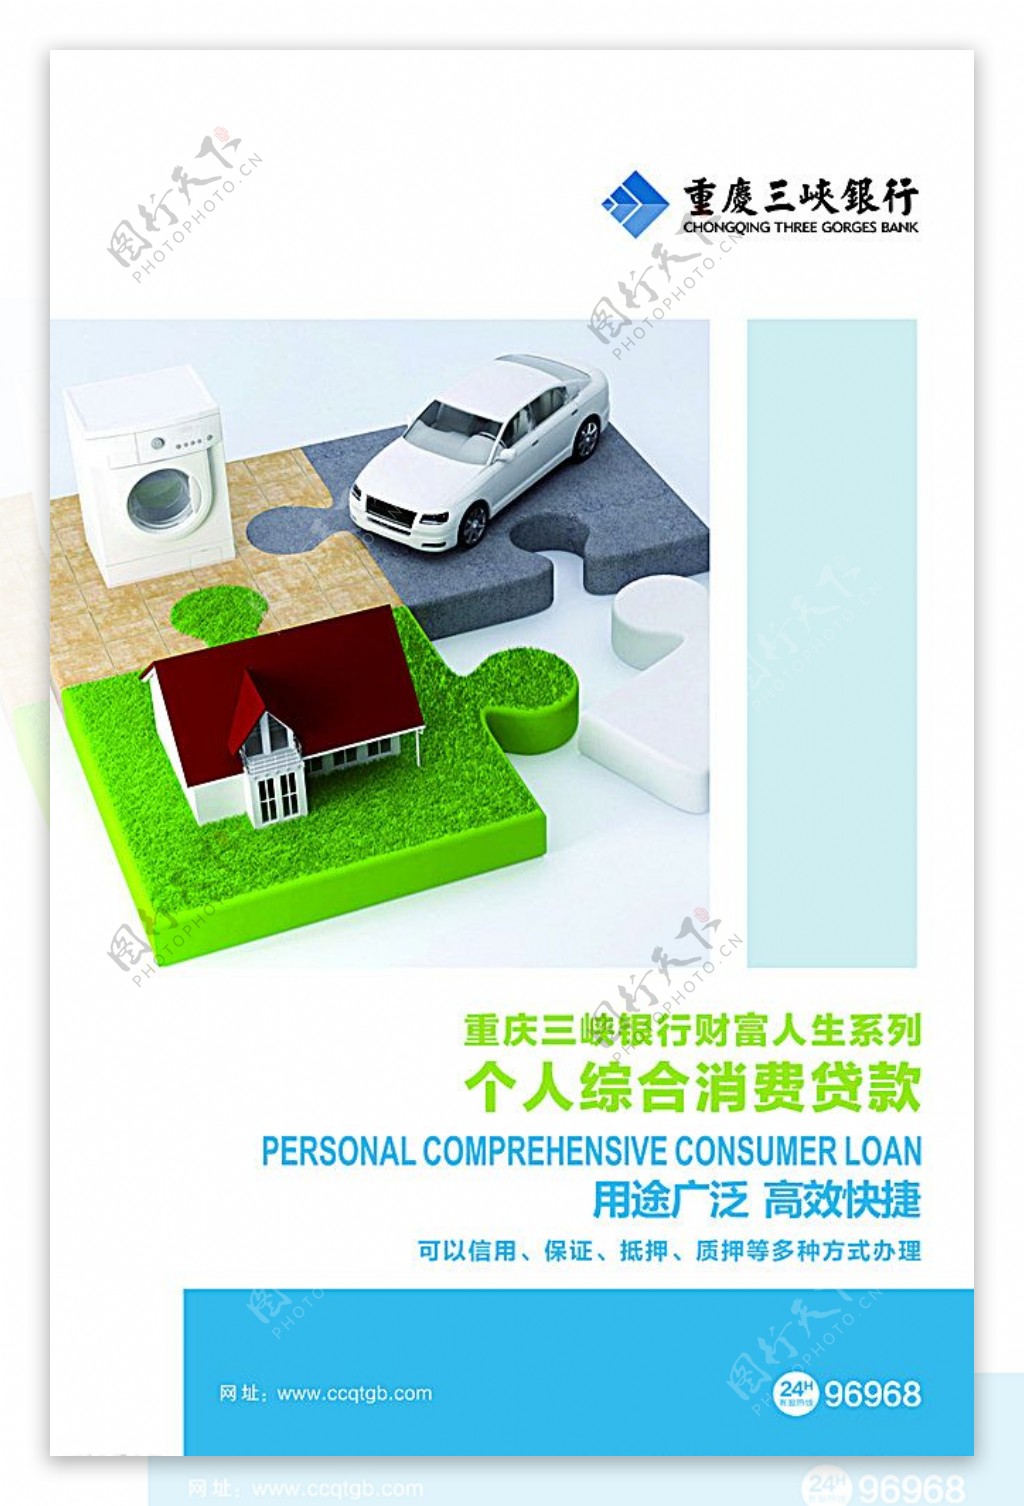 三峡银行个人综合消费贷款图片